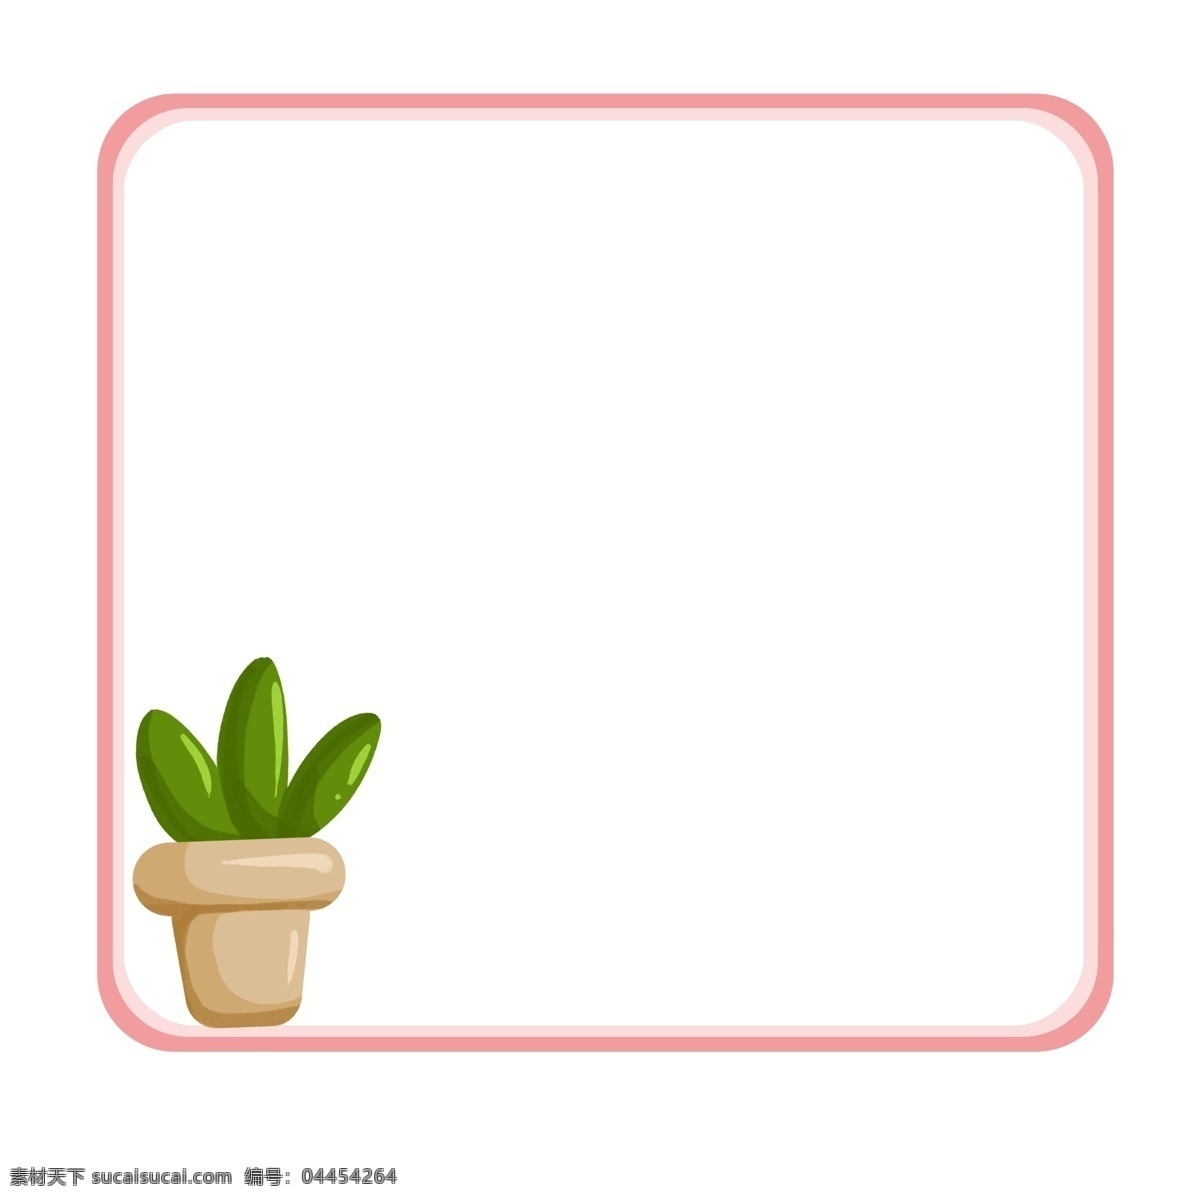 粉色 盆栽 植物 边框 粉色的边框 卡通边框 美丽边框 漂亮边框 小物边框 物品边框 盆栽的边框